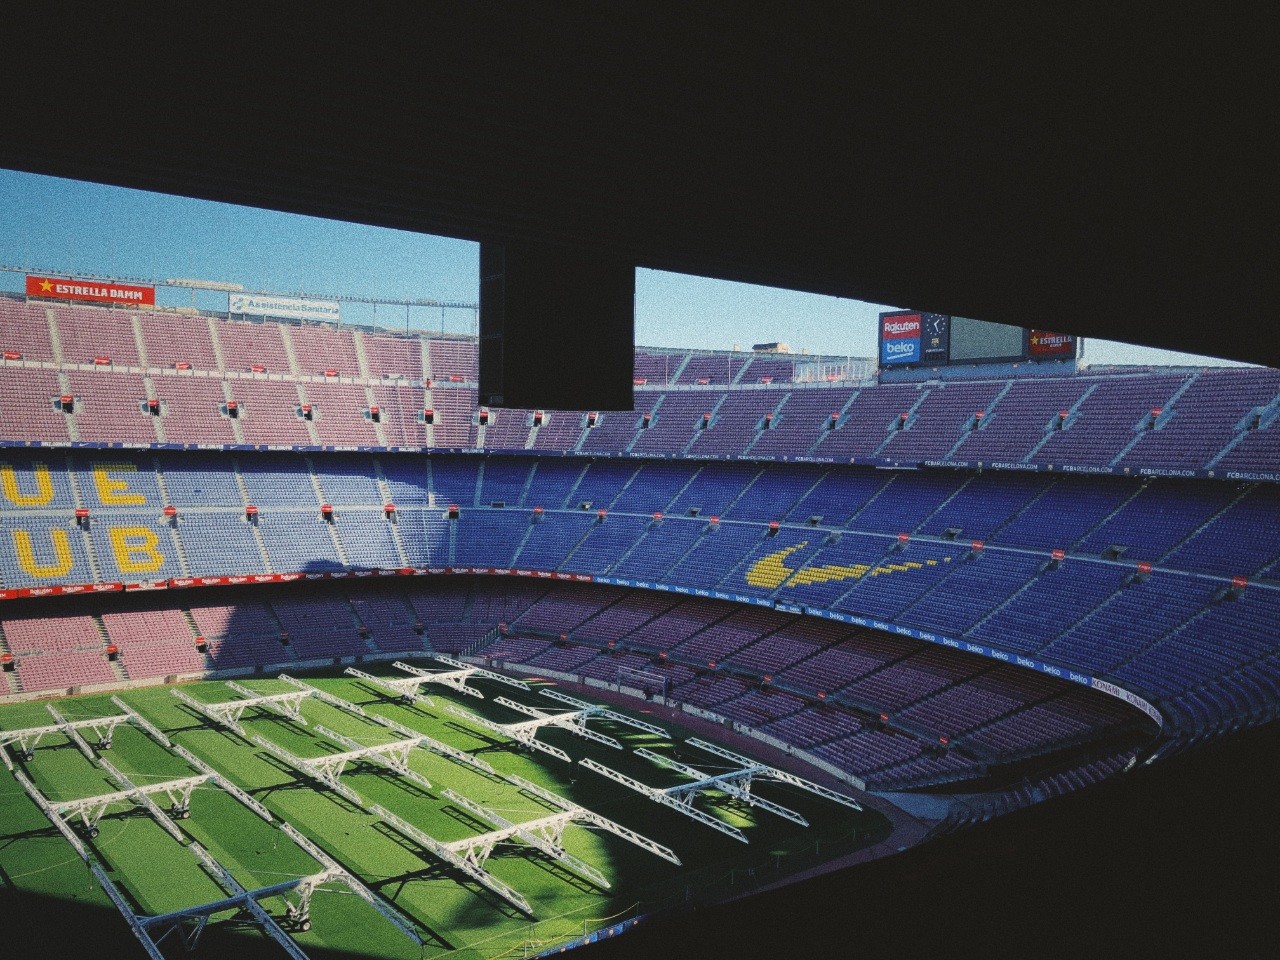 Camp Nou in Barcelona, Spain